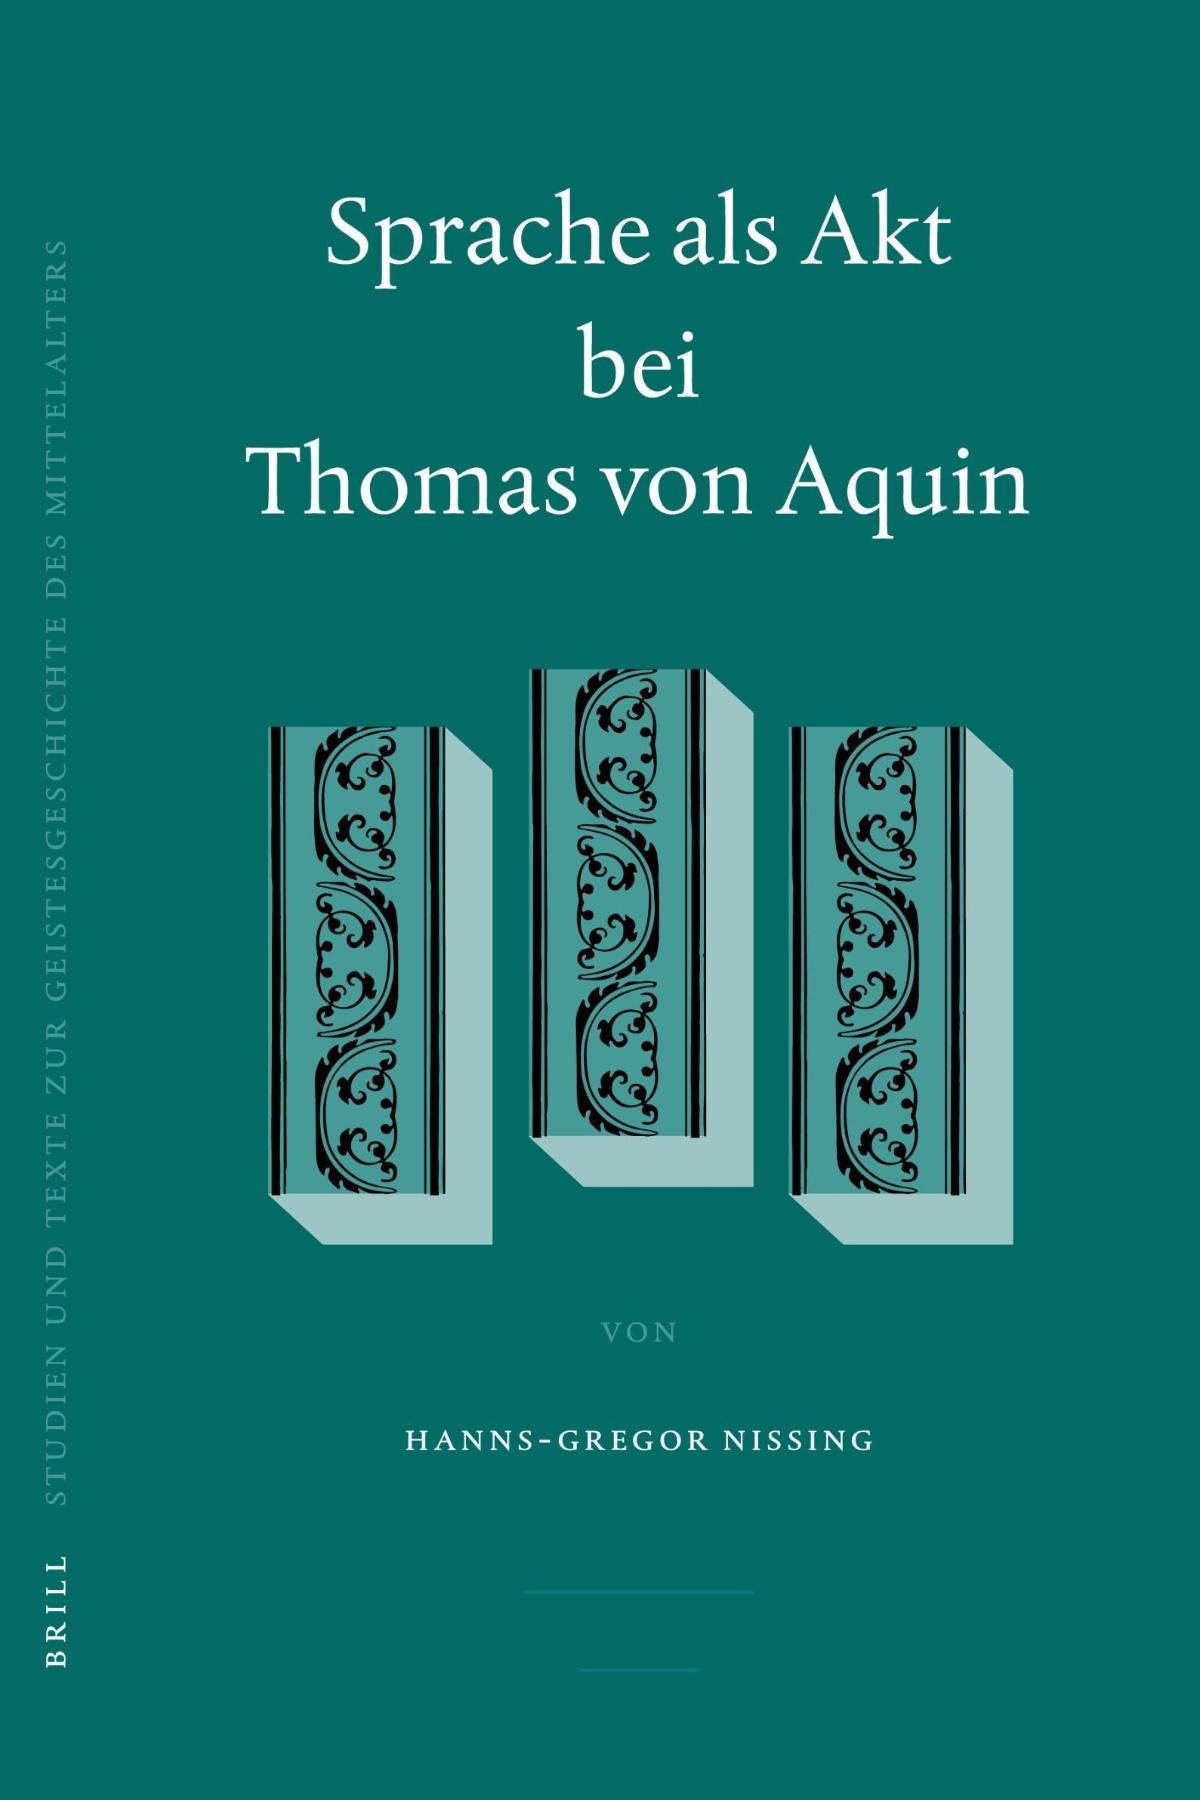 Nissing - Sprache als Akt bei Thomas von Aquin (Cover)